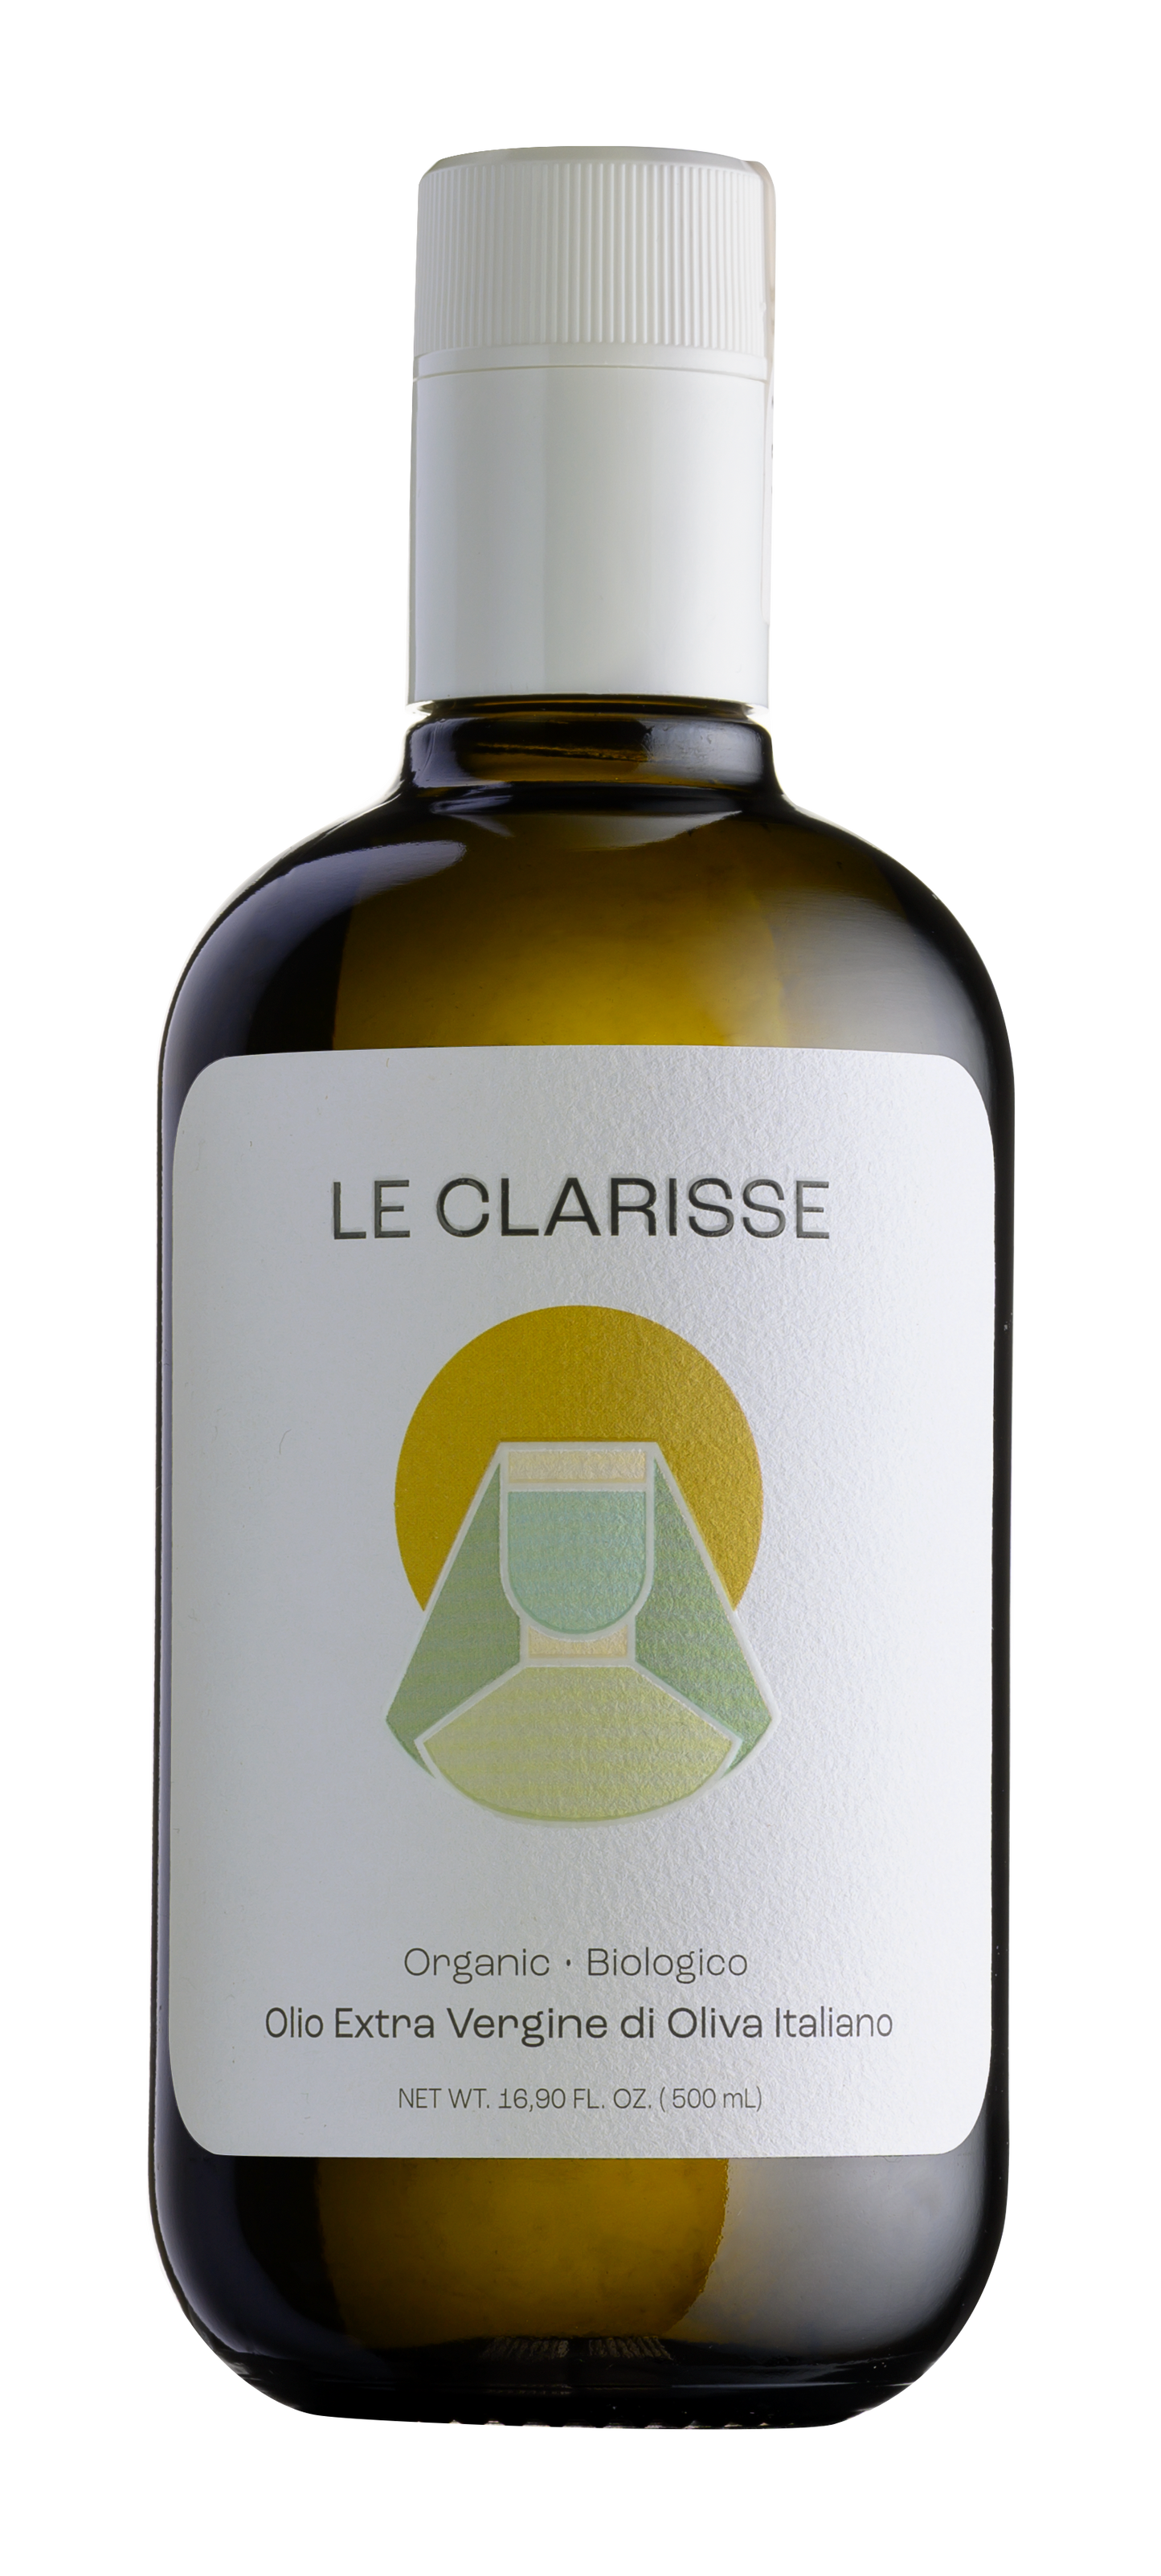 Le Clarisse - Premium Organic EVOO